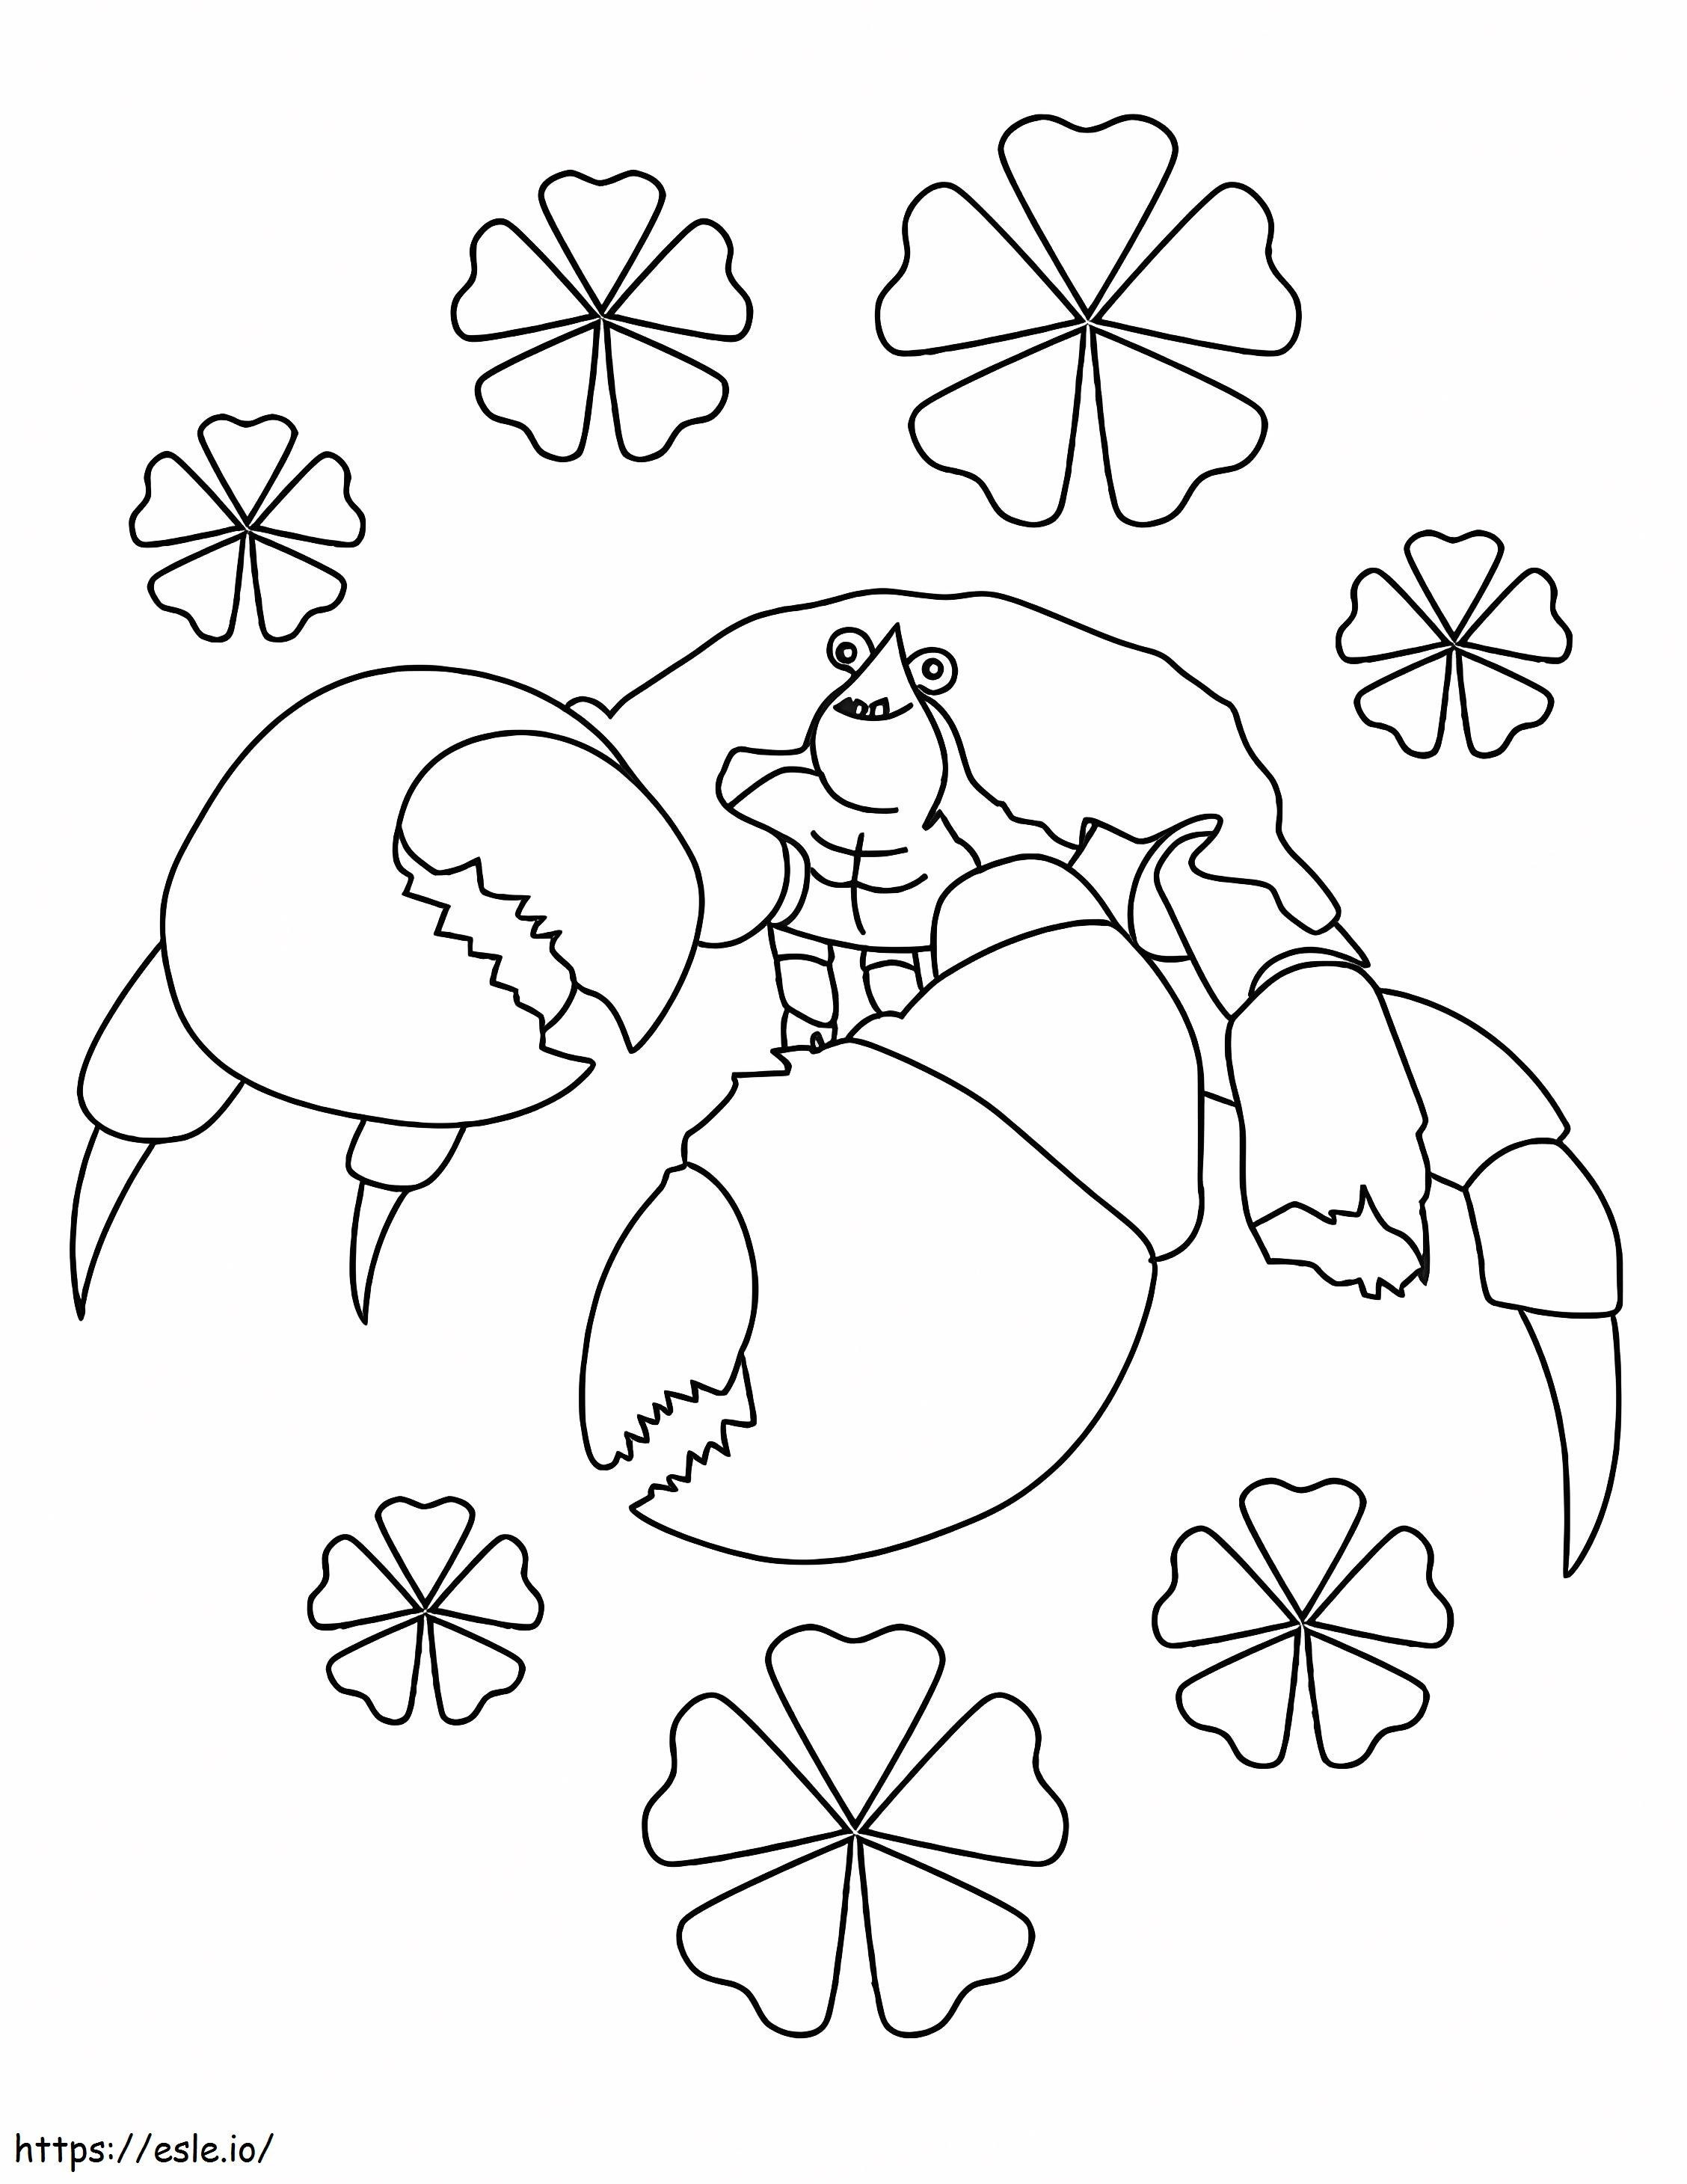 Tamatoa und Kleeblatt ausmalbilder